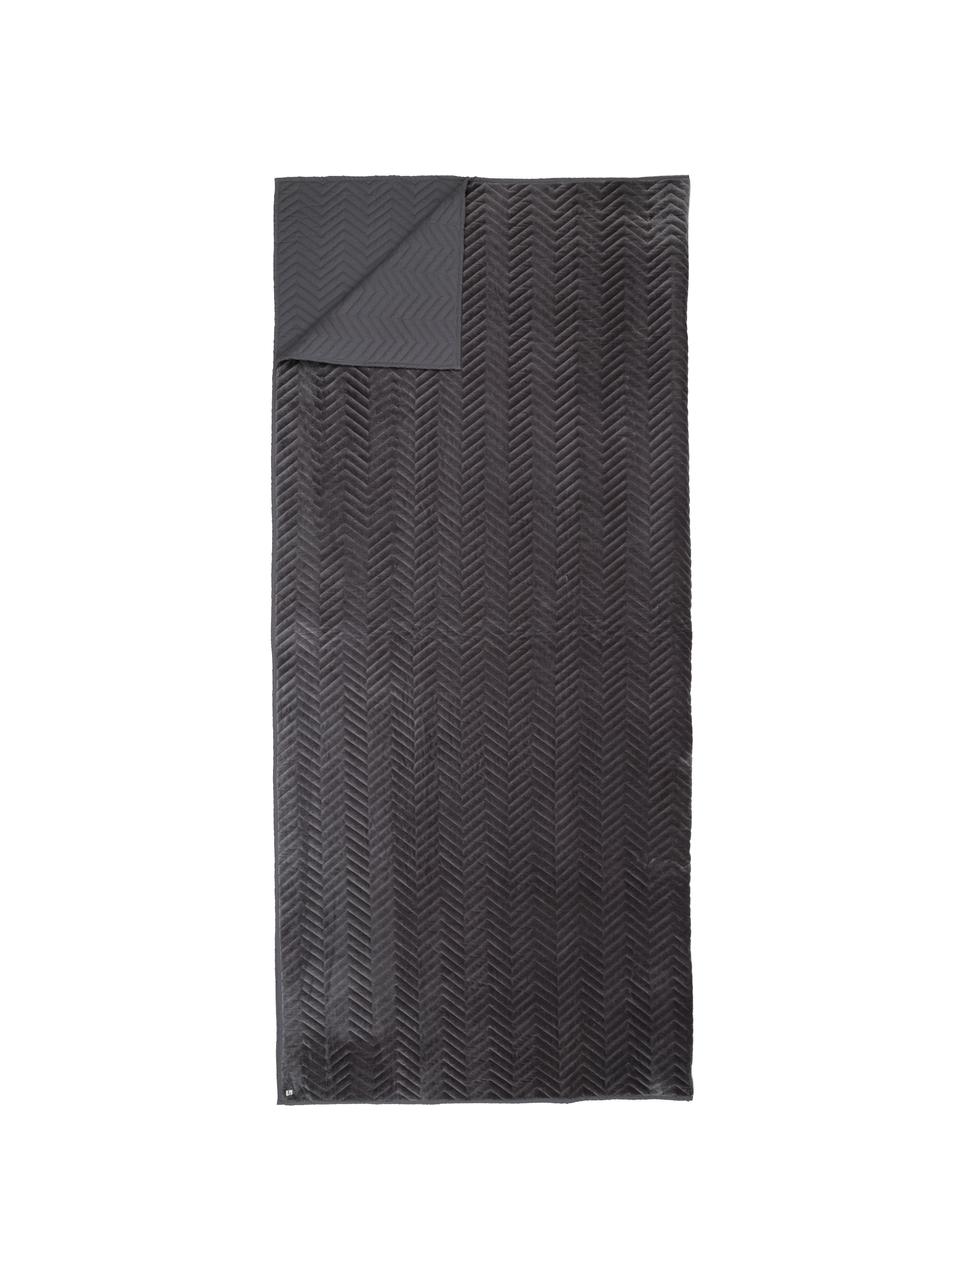 Samt-Tagesdecke Chevron, 100% Baumwollsamt, Grau, 240 x 260 cm